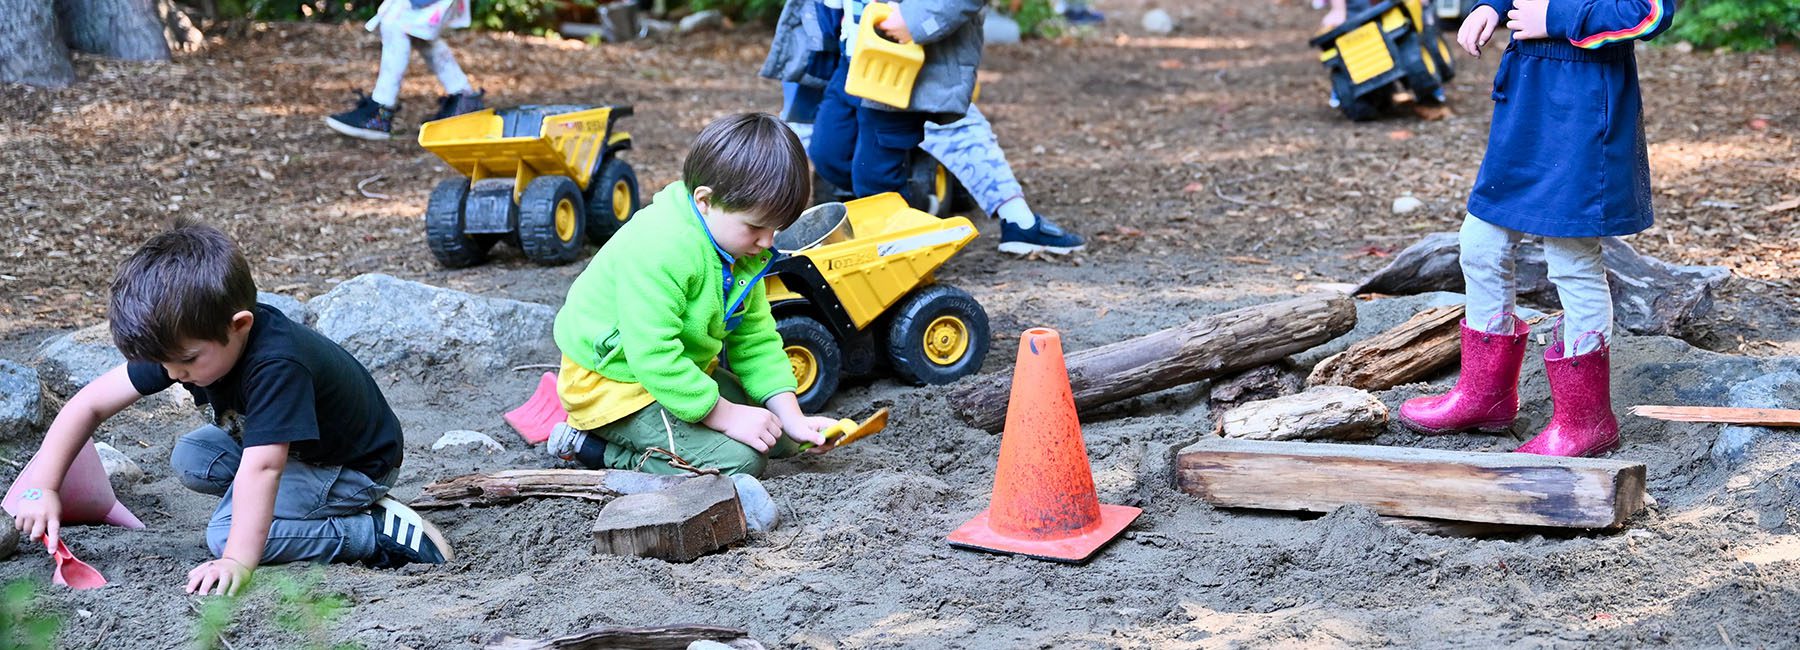 Kids playing in outdoor sandbox